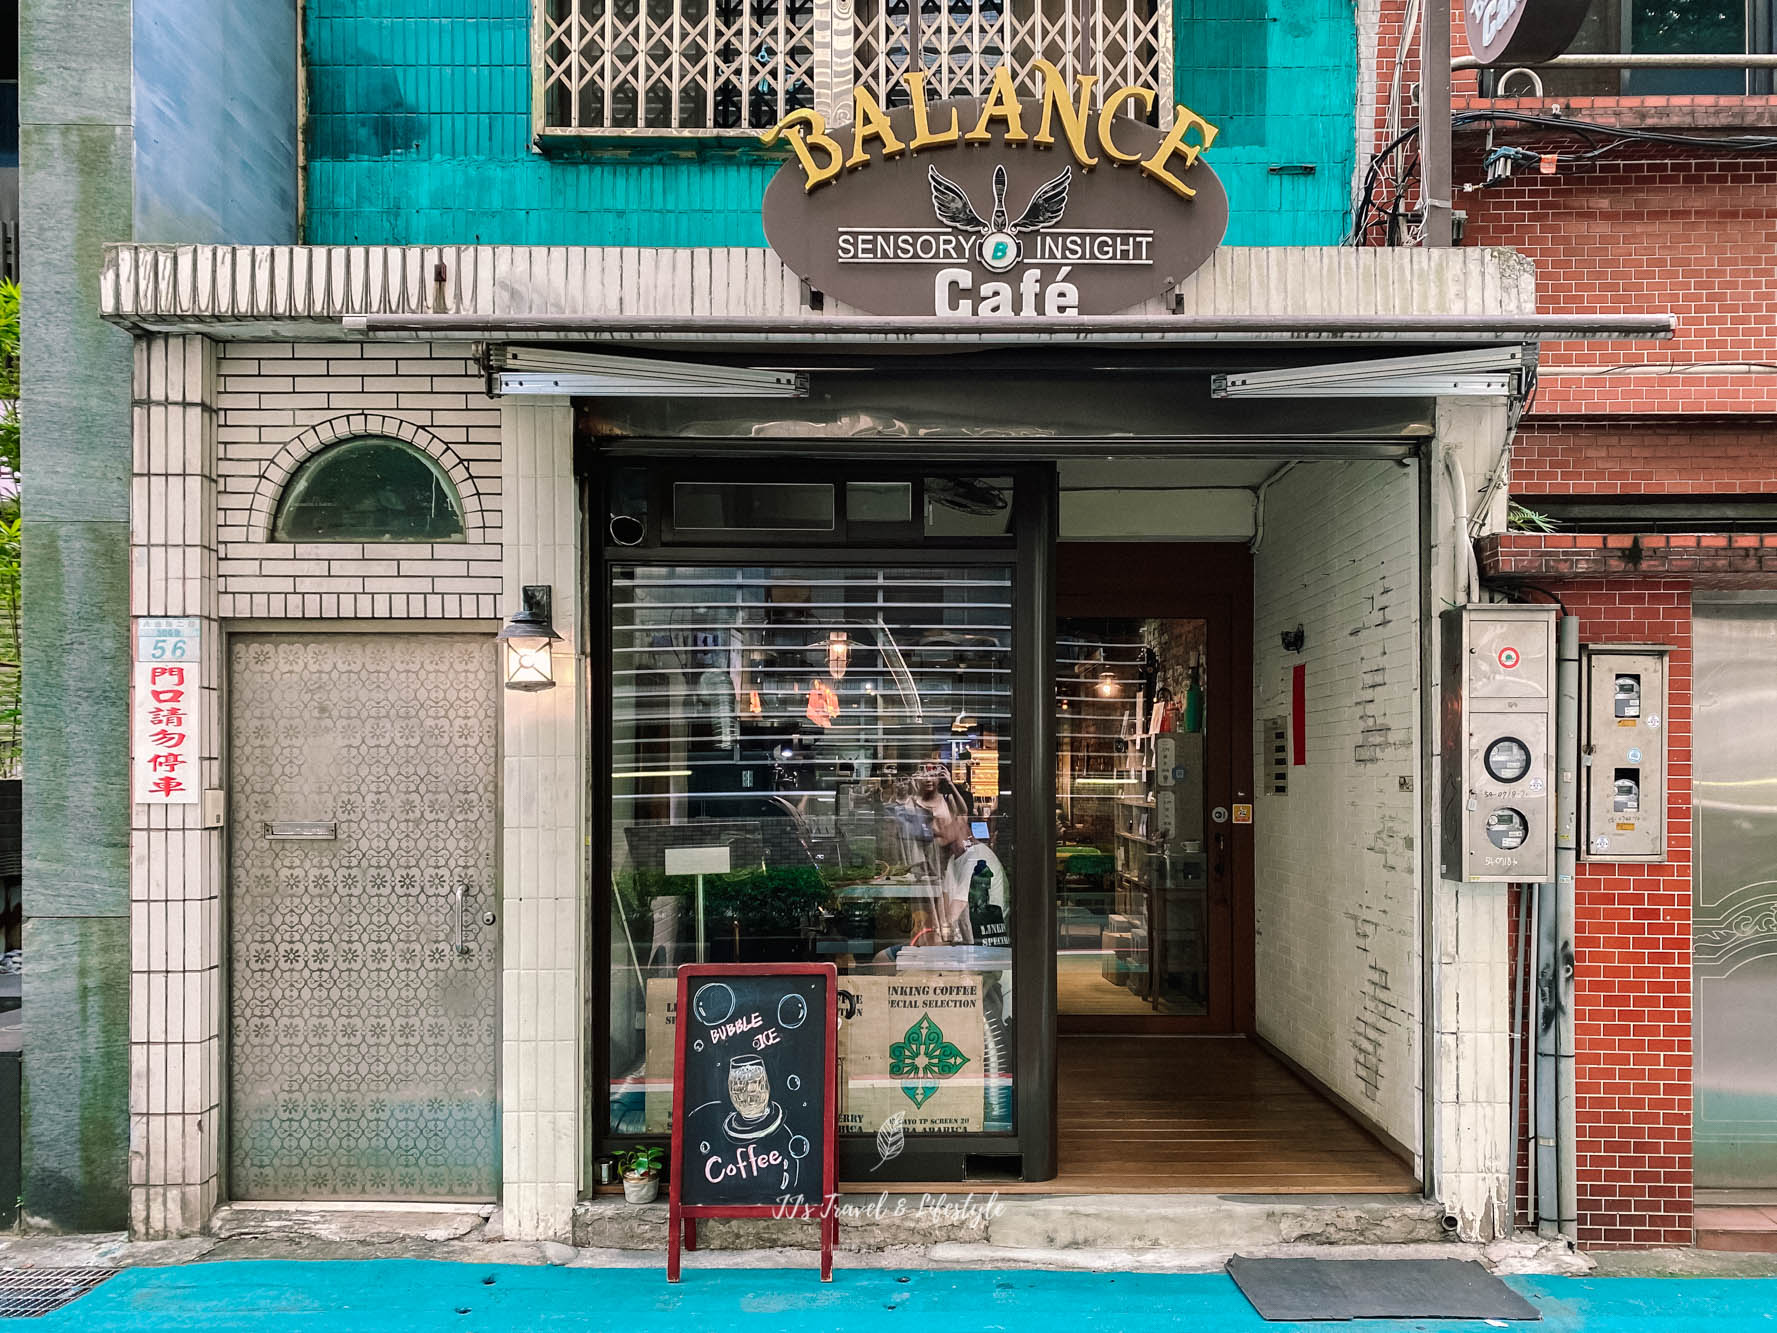 忠孝復興咖啡廳 Balance Cafe 平衡點咖啡 近微風廣場咖啡很厲害的小店 Jj旅行私吧台